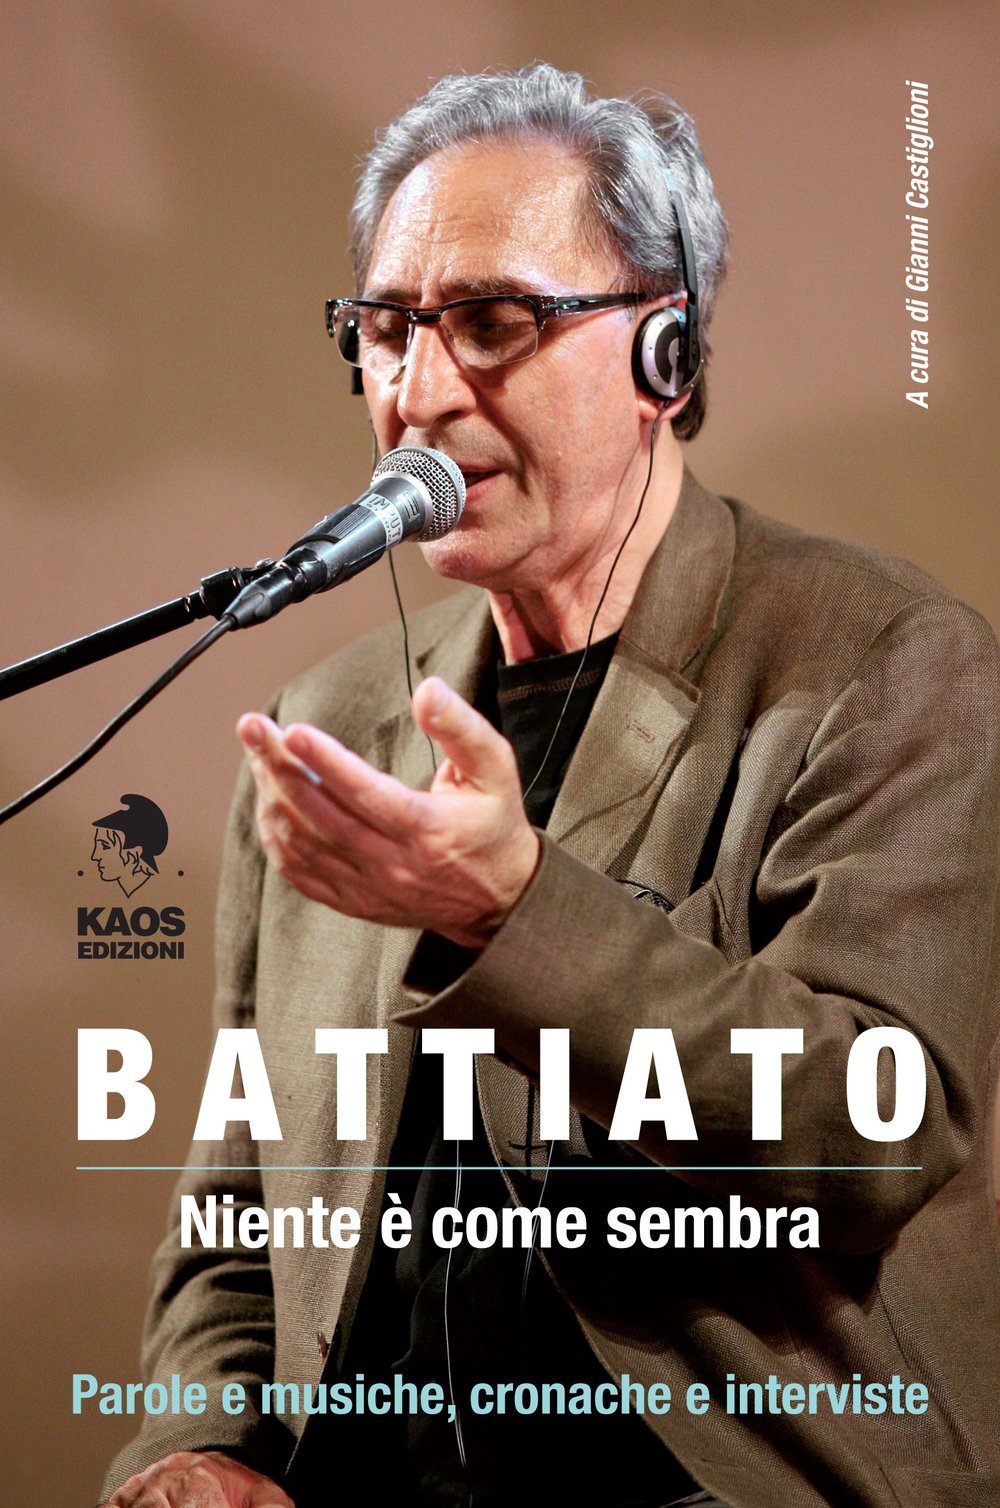 Franco Battiato - Niente è come sembra